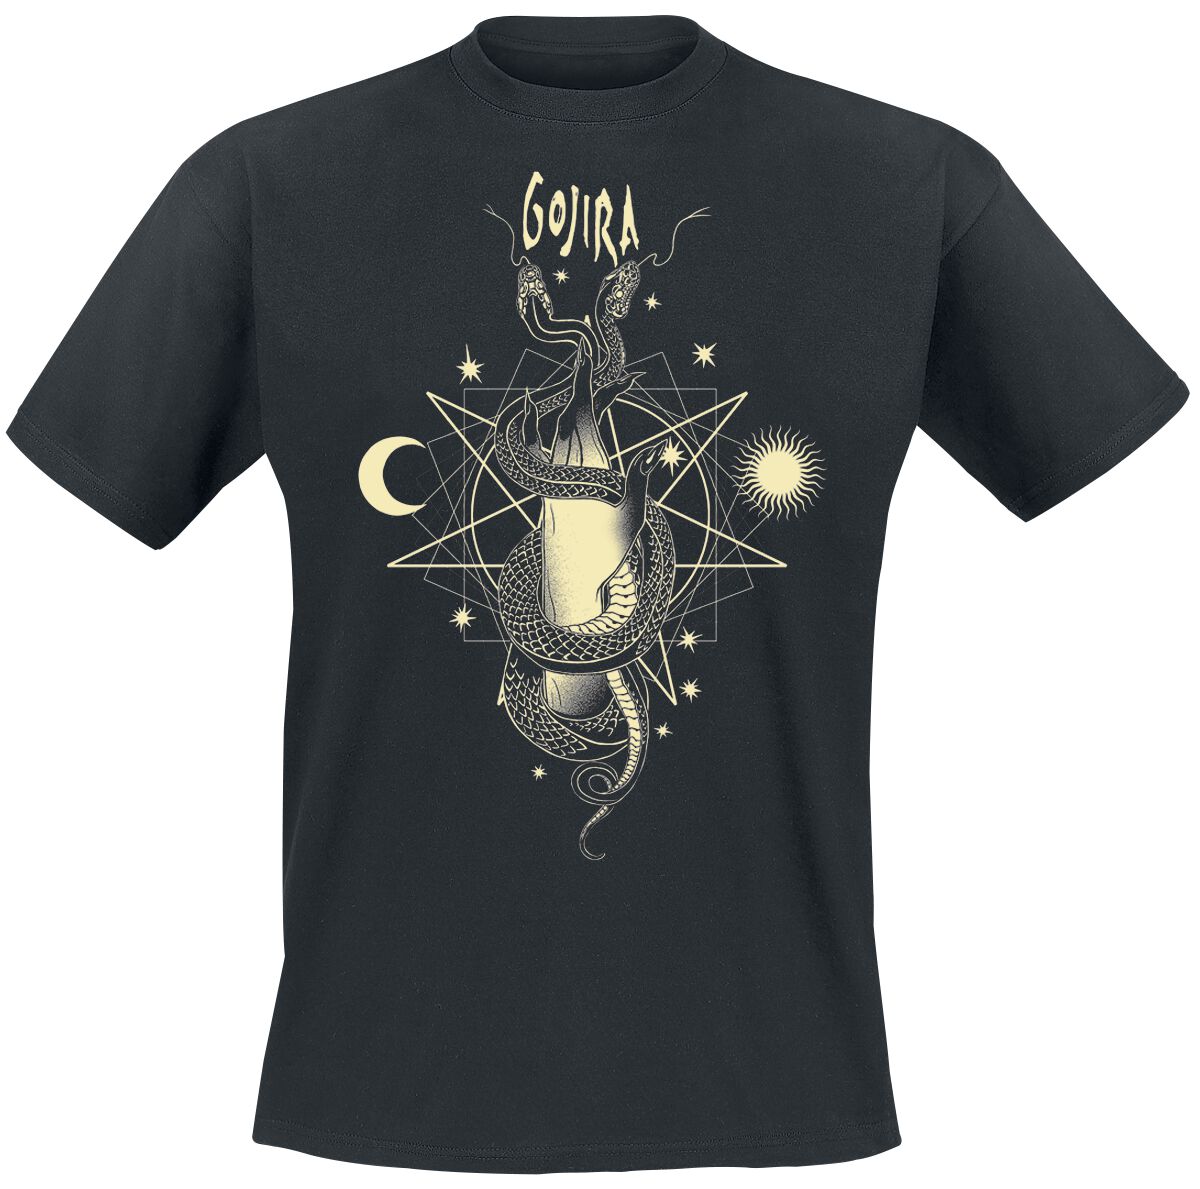 Gojira T-Shirt - Celestial Snakes - S bis XXL - für Männer - Größe M - schwarz  - Lizenziertes Merchandise!